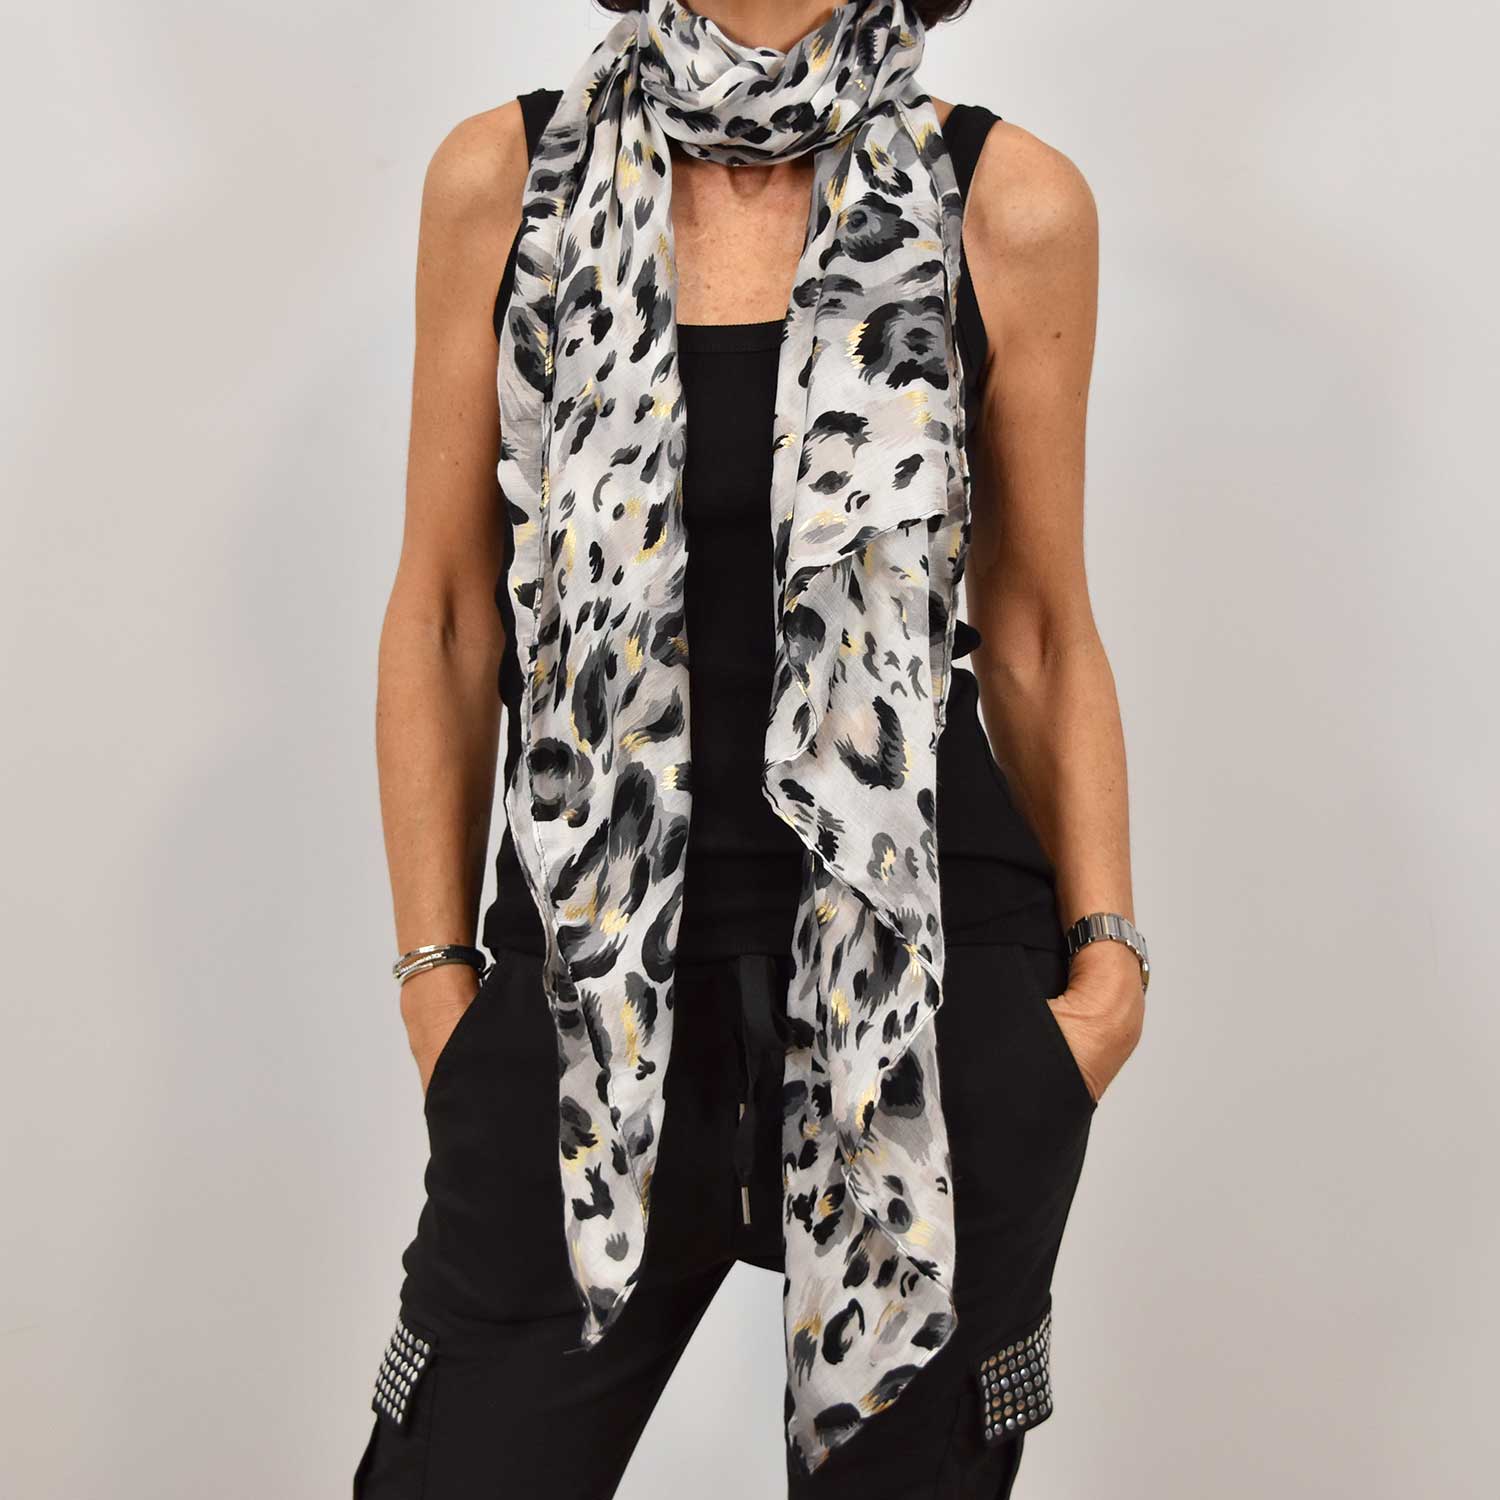 Grey leopard shiny foulard